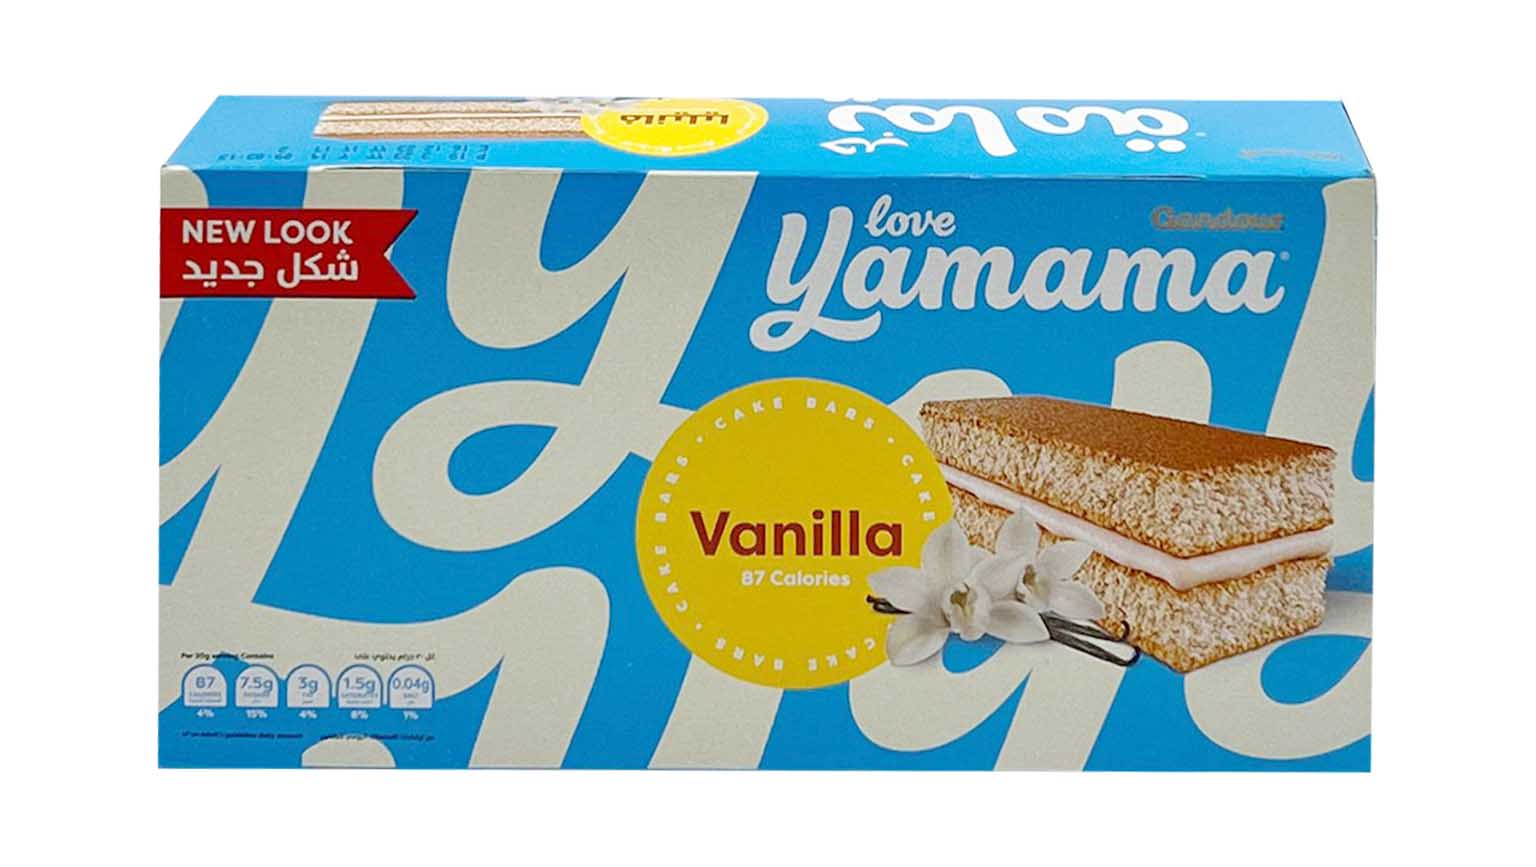 Gandour Yamama Cocoa Vanilla Cake 21G price in Dubai, UAE | Compare Prices